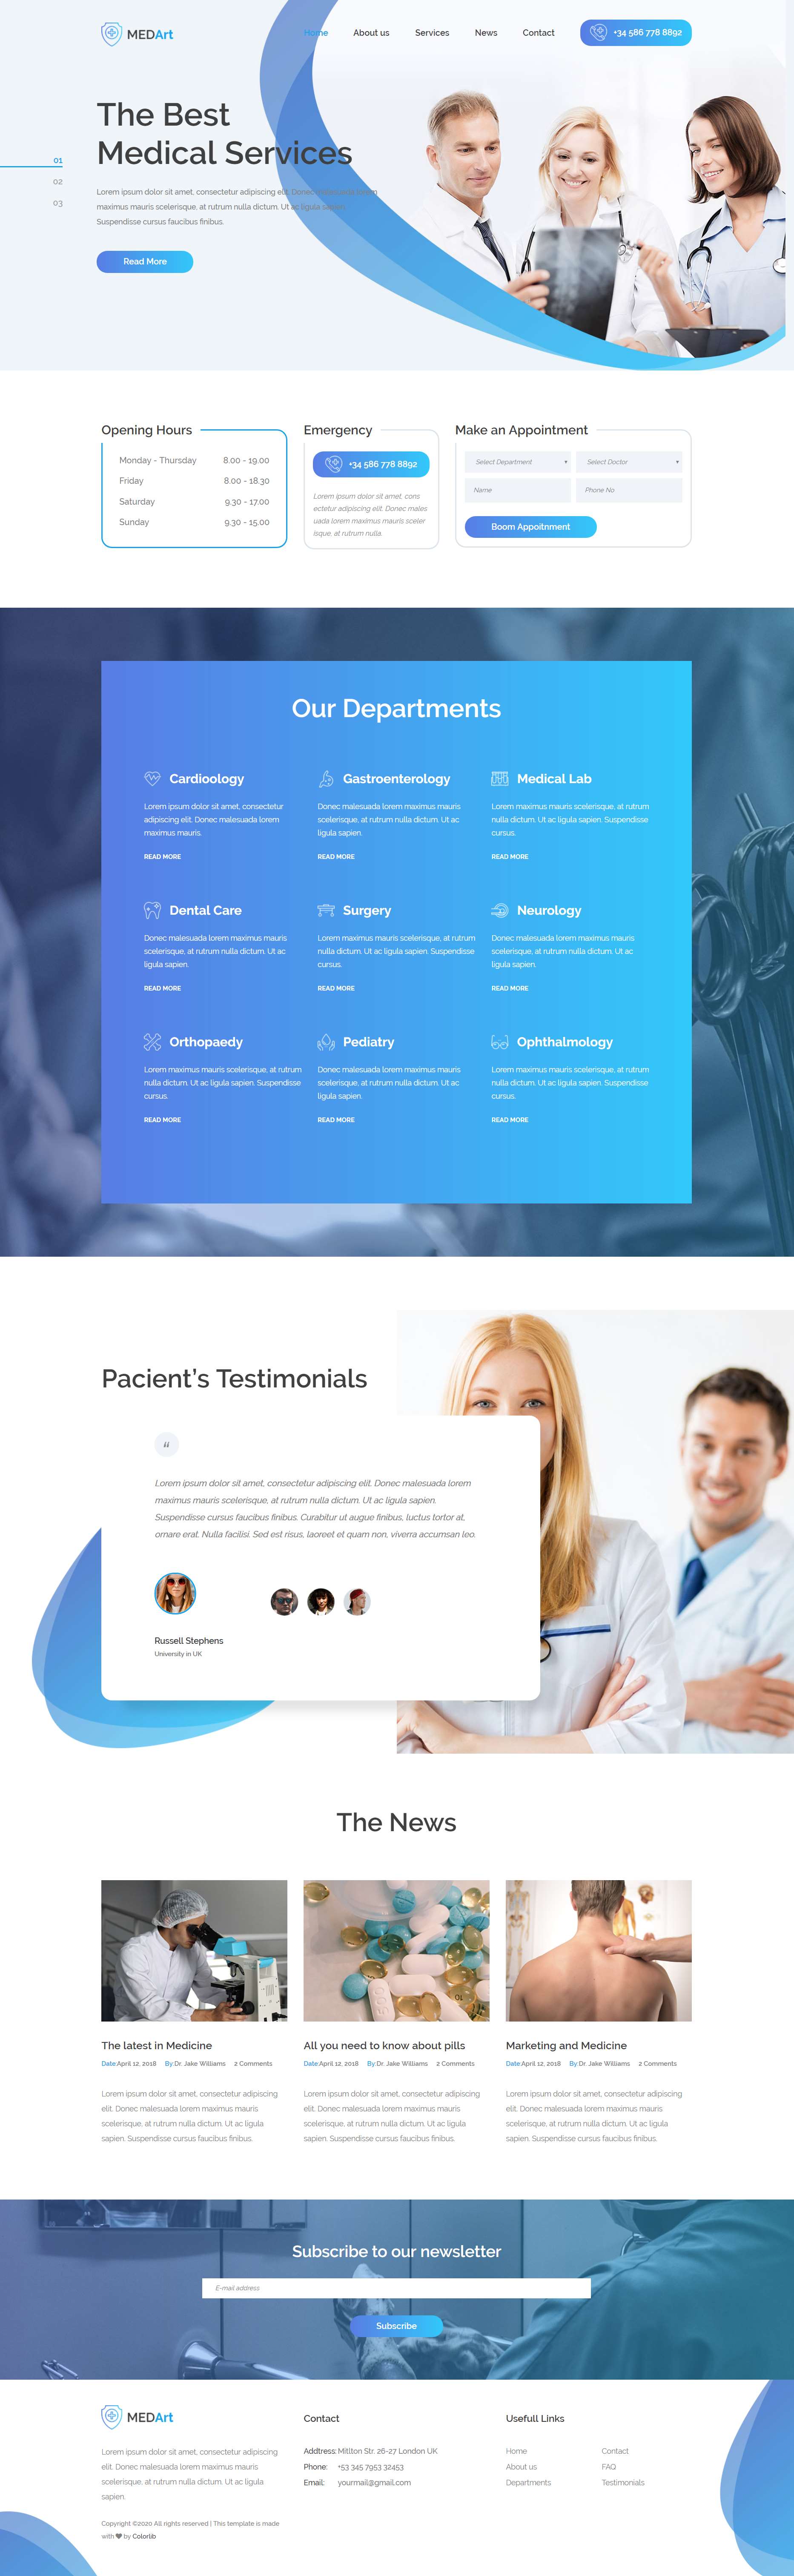 蓝色简洁风格响应式医疗机构服务网页模板